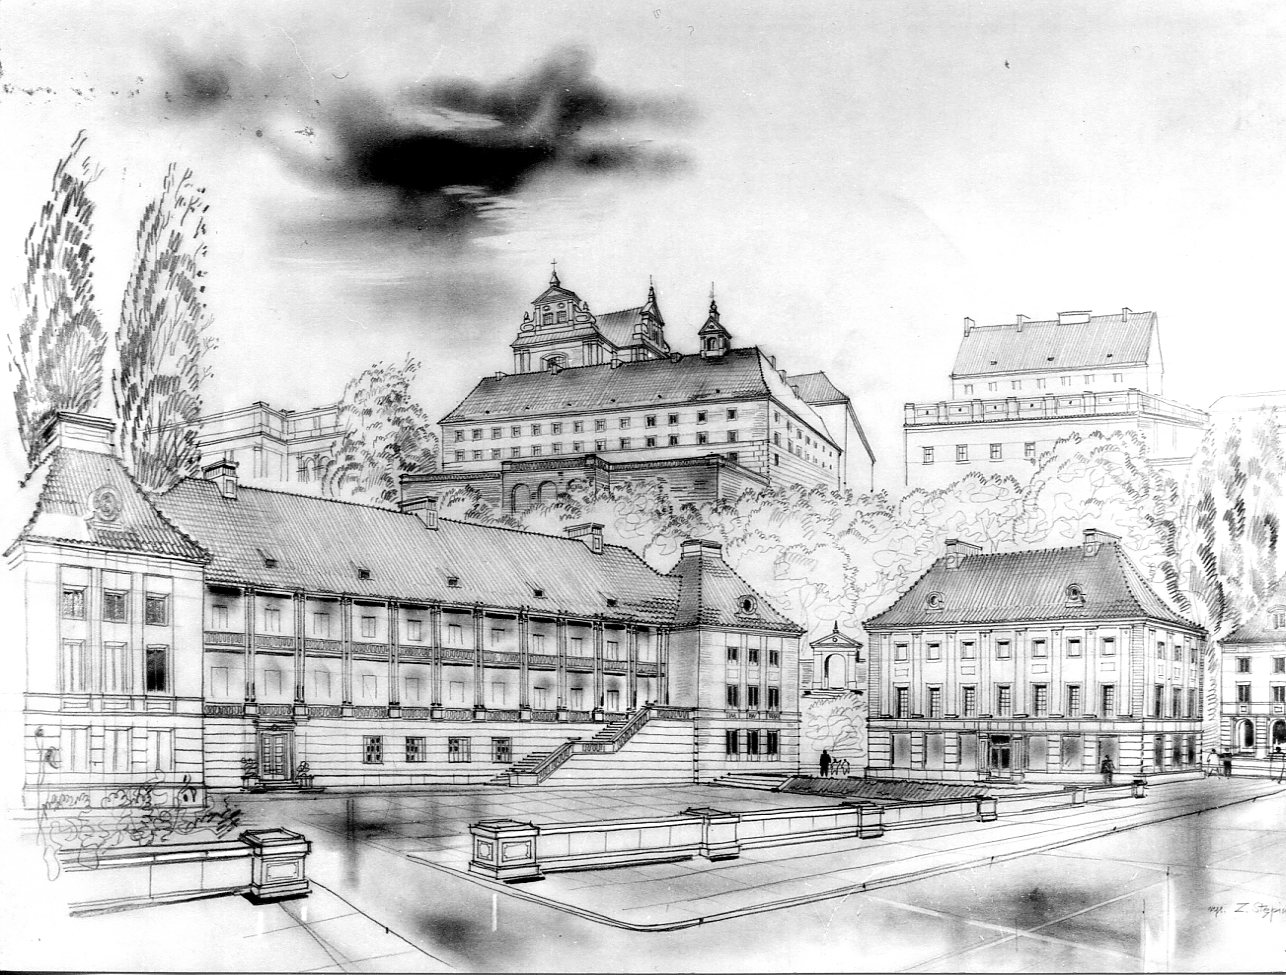 Wawel na Mariensztacie piękna kompozycja architektoniczna i świadek burzliwych czasów. Jednak pod kątem urbanistycznym smętny i opustoszały fragment Warszawy